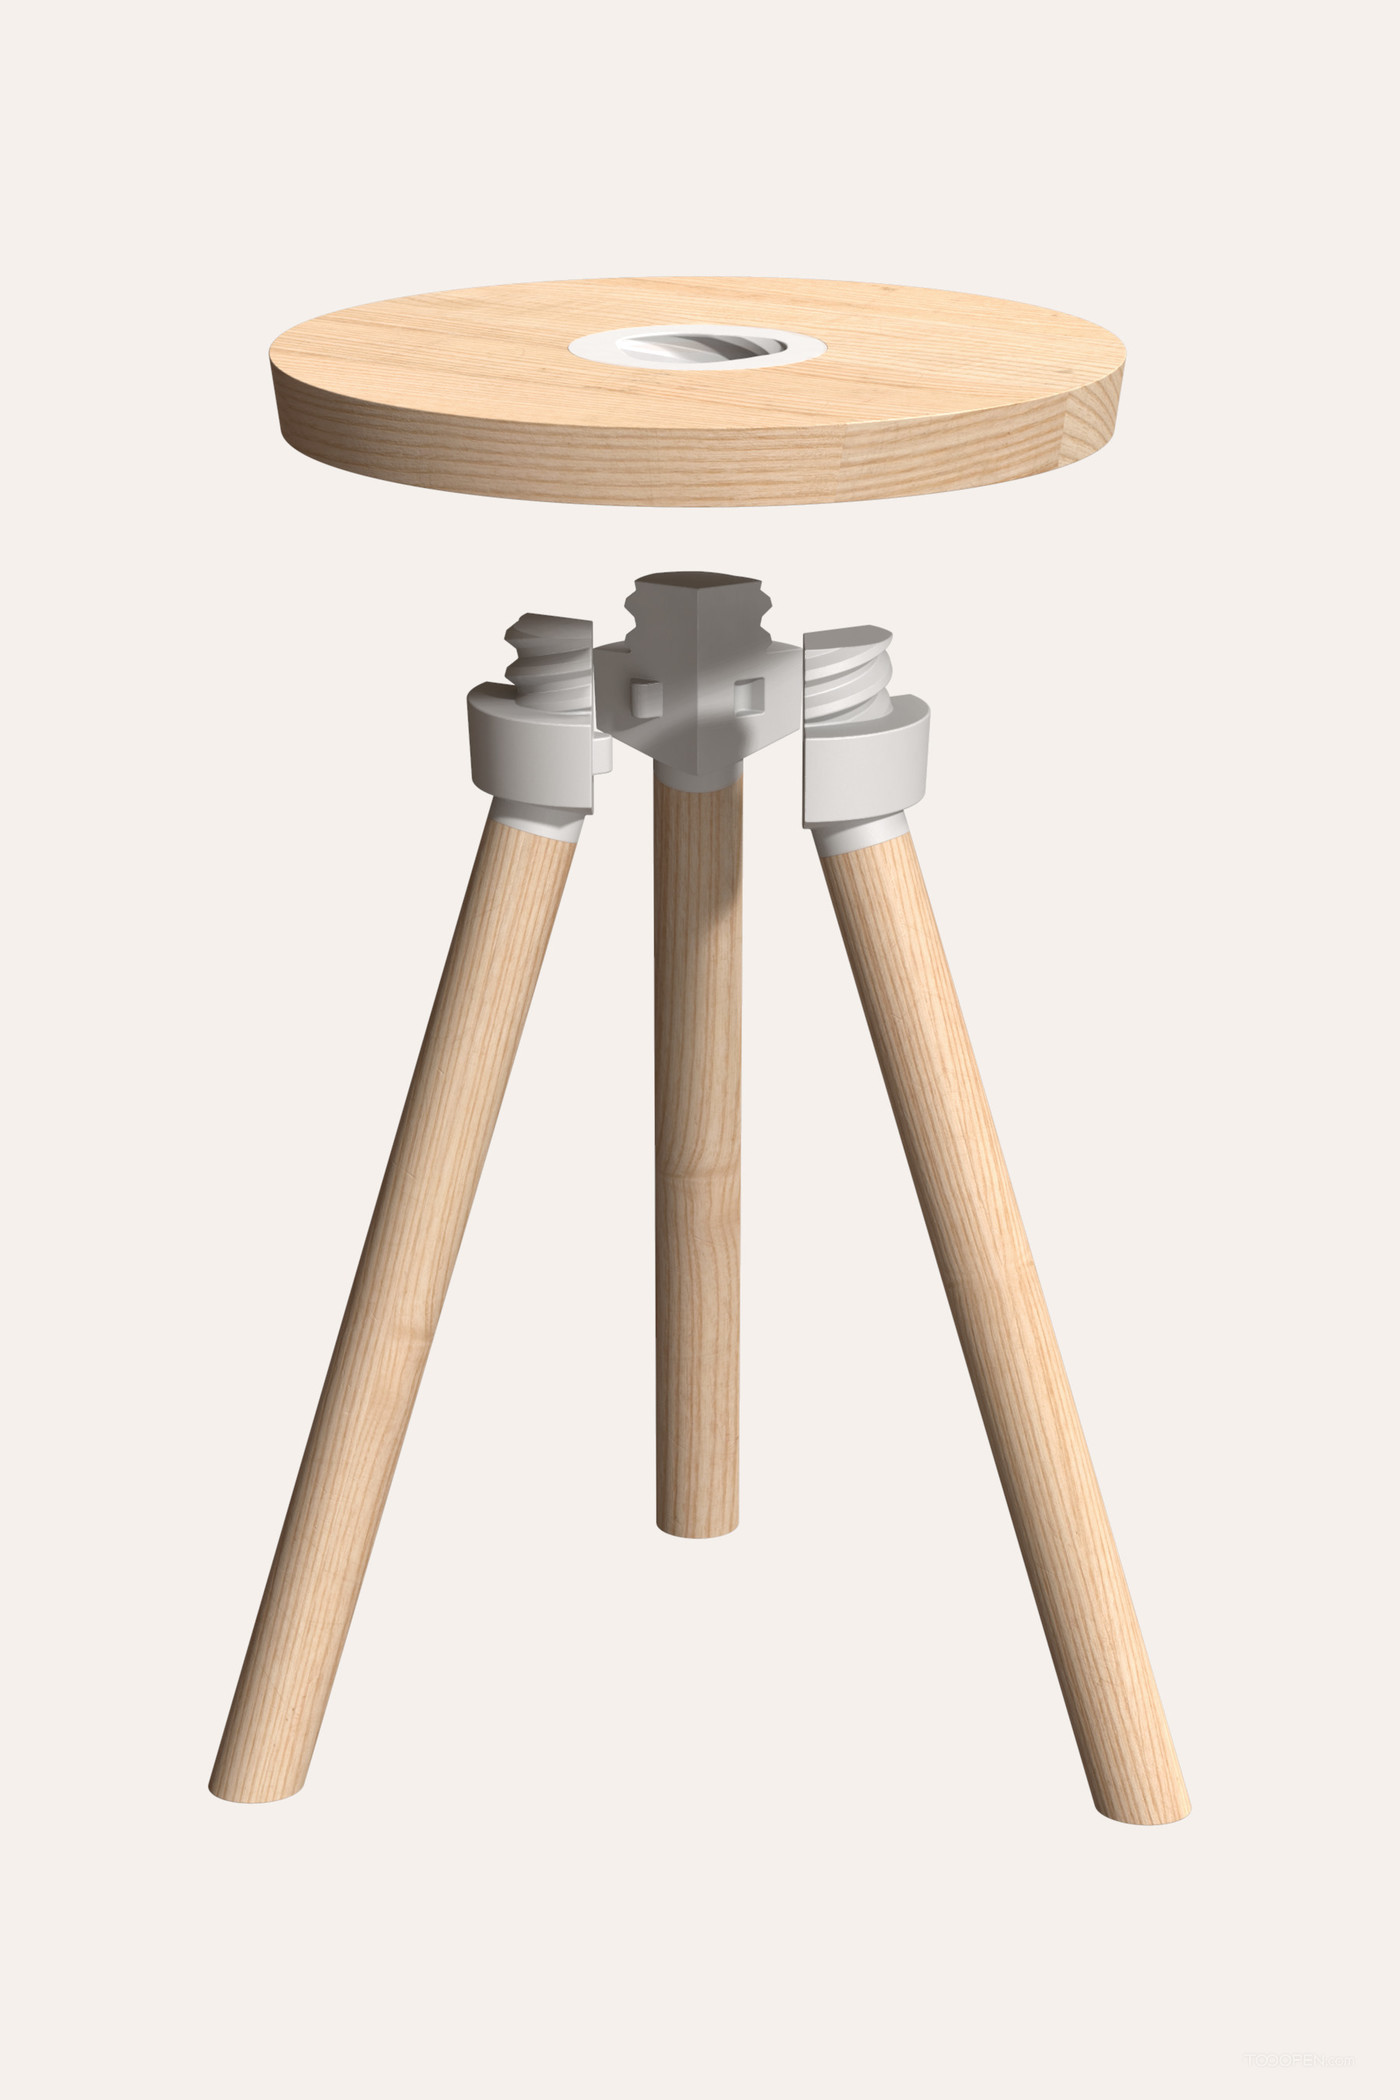 简易易组装桌凳家具设计作品欣赏-03